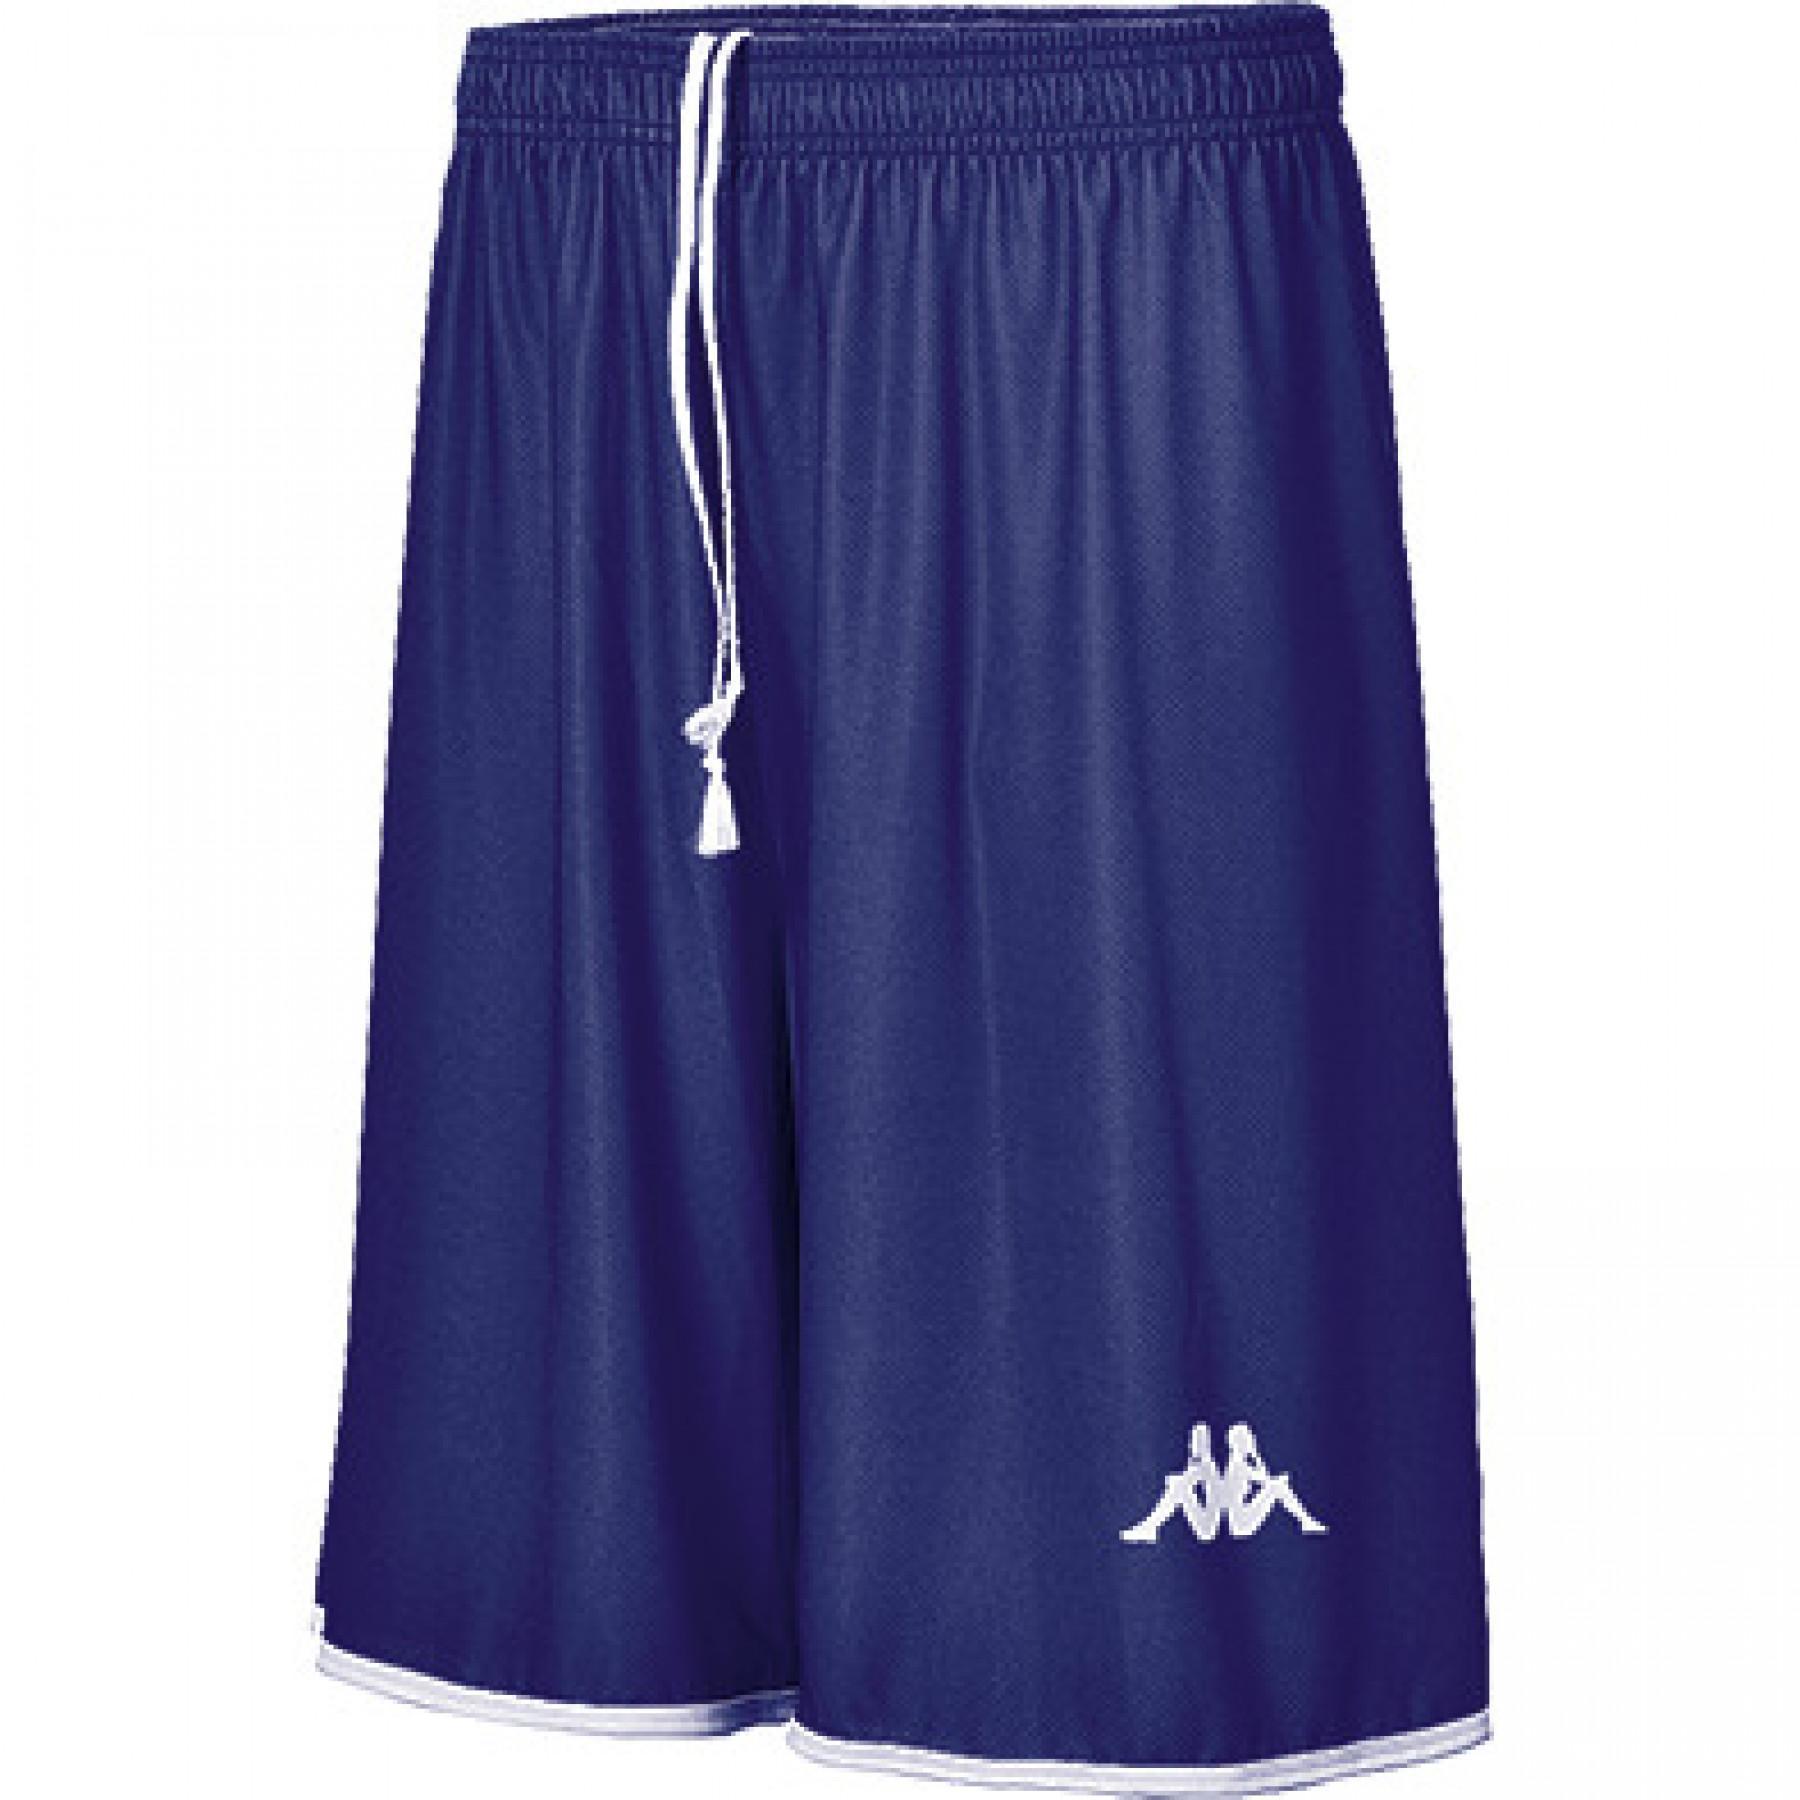 Basketball shorts Kappa Opi